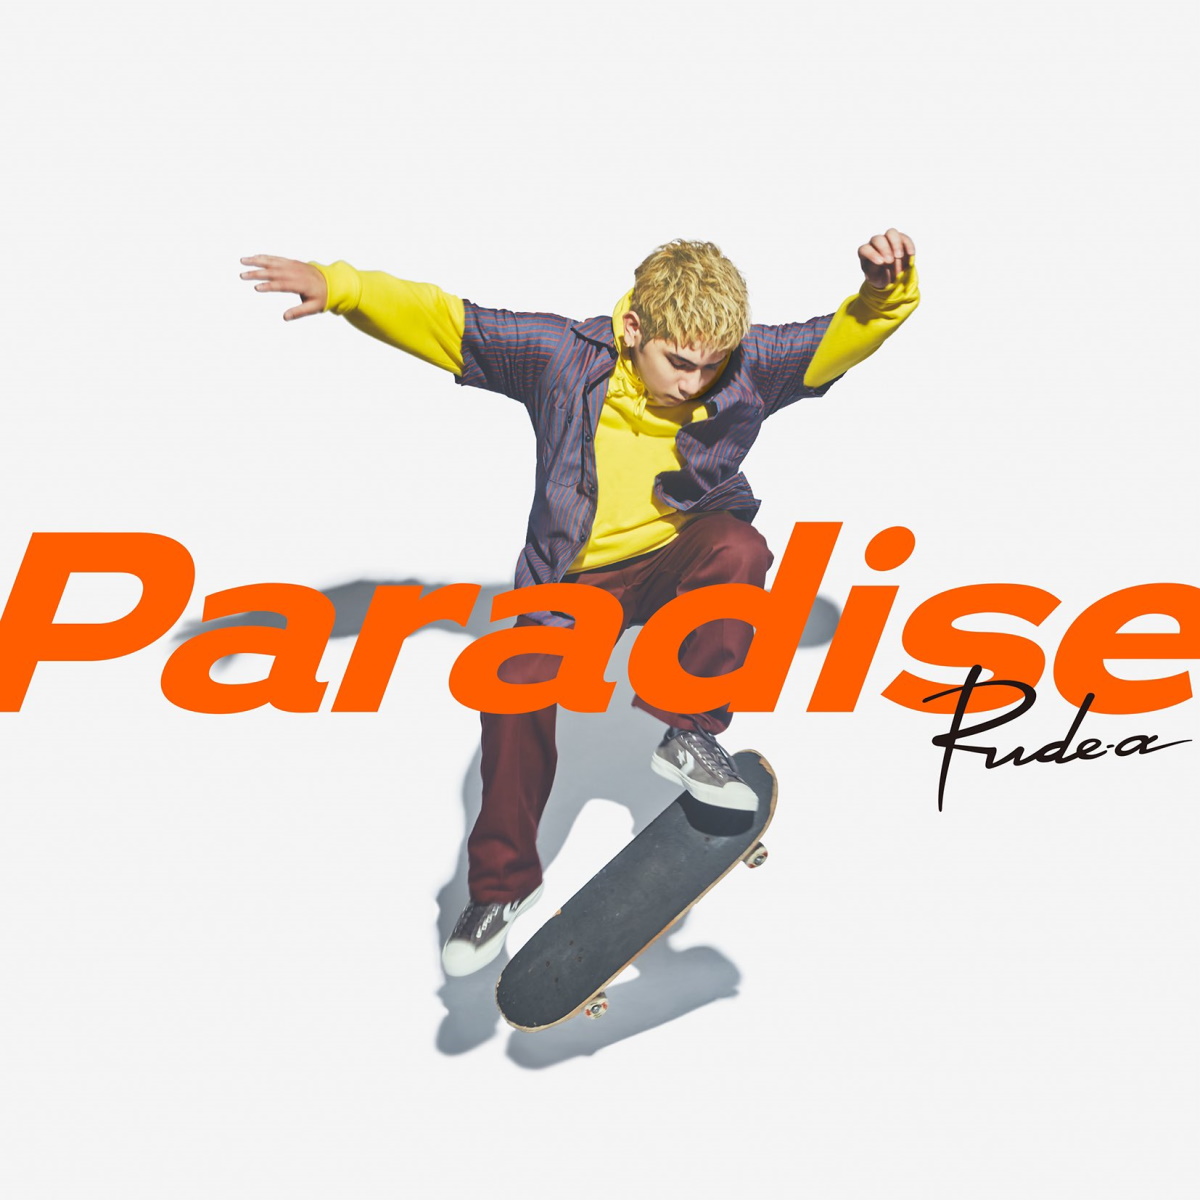 Paradise lyrics